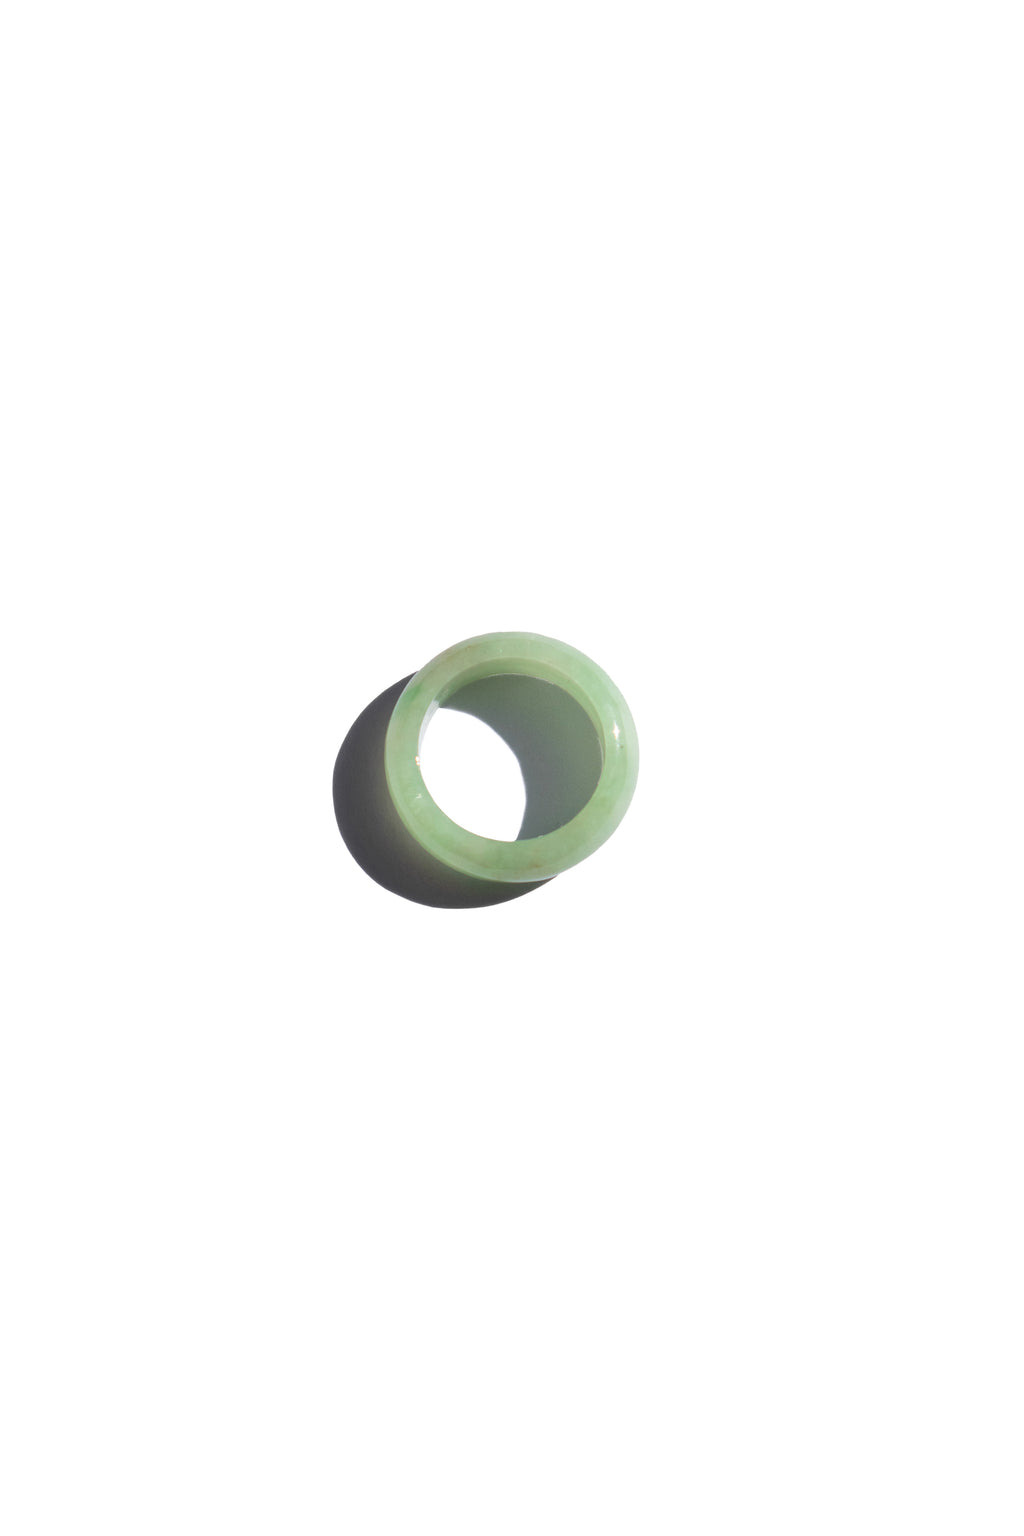 seree-Lemonade-Light-green-jade-ring